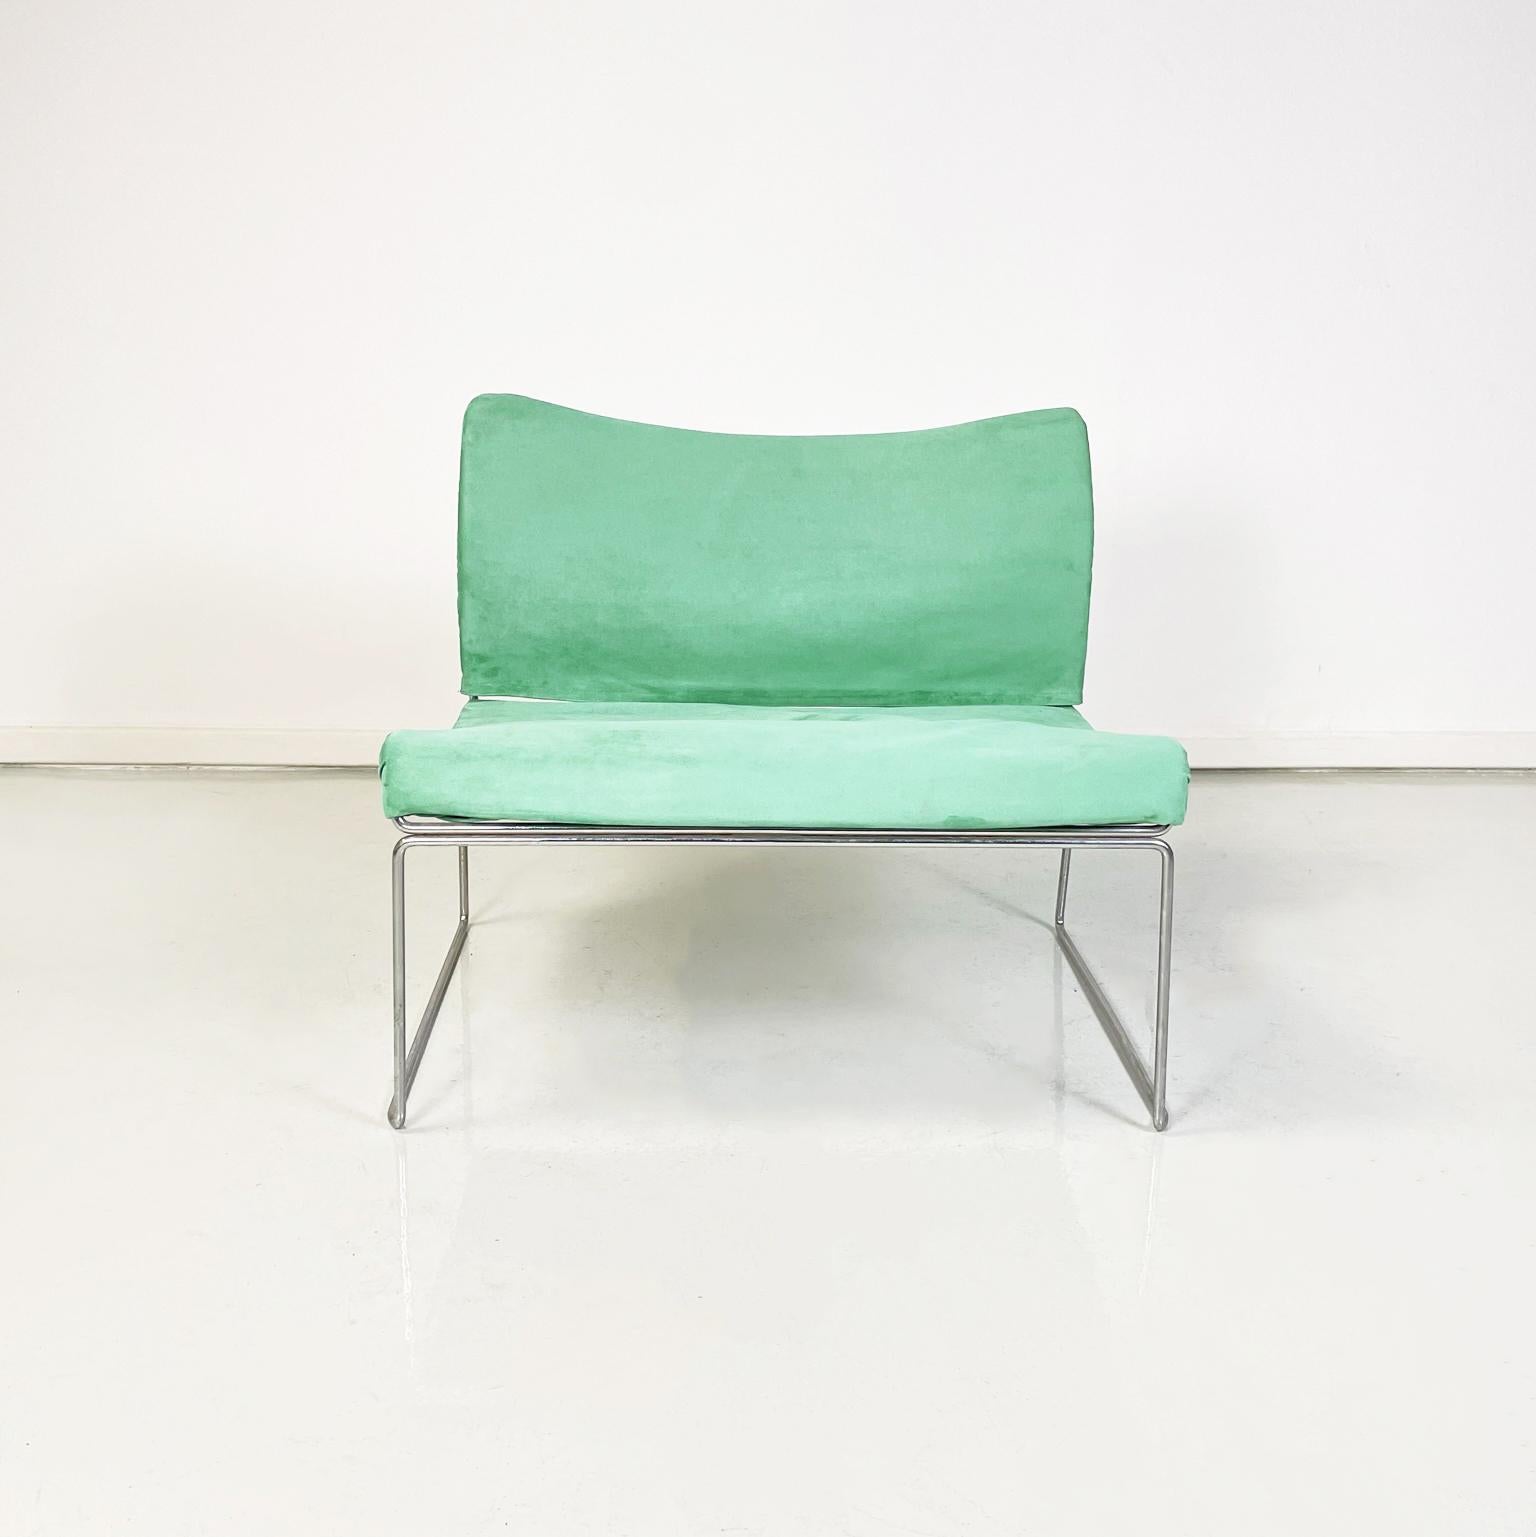 Moderner italienischer Sessel aus aquagrünem Samt, Mod. Saghi von Kazuhide Takahama für Gavina, 1970er Jahre
Ikonischer und eleganter Sessel Mod. Saghi mit Stahlrohrgestell. Sitz und Rückenlehne sind leicht gepolstert und mit einem aquagrünen